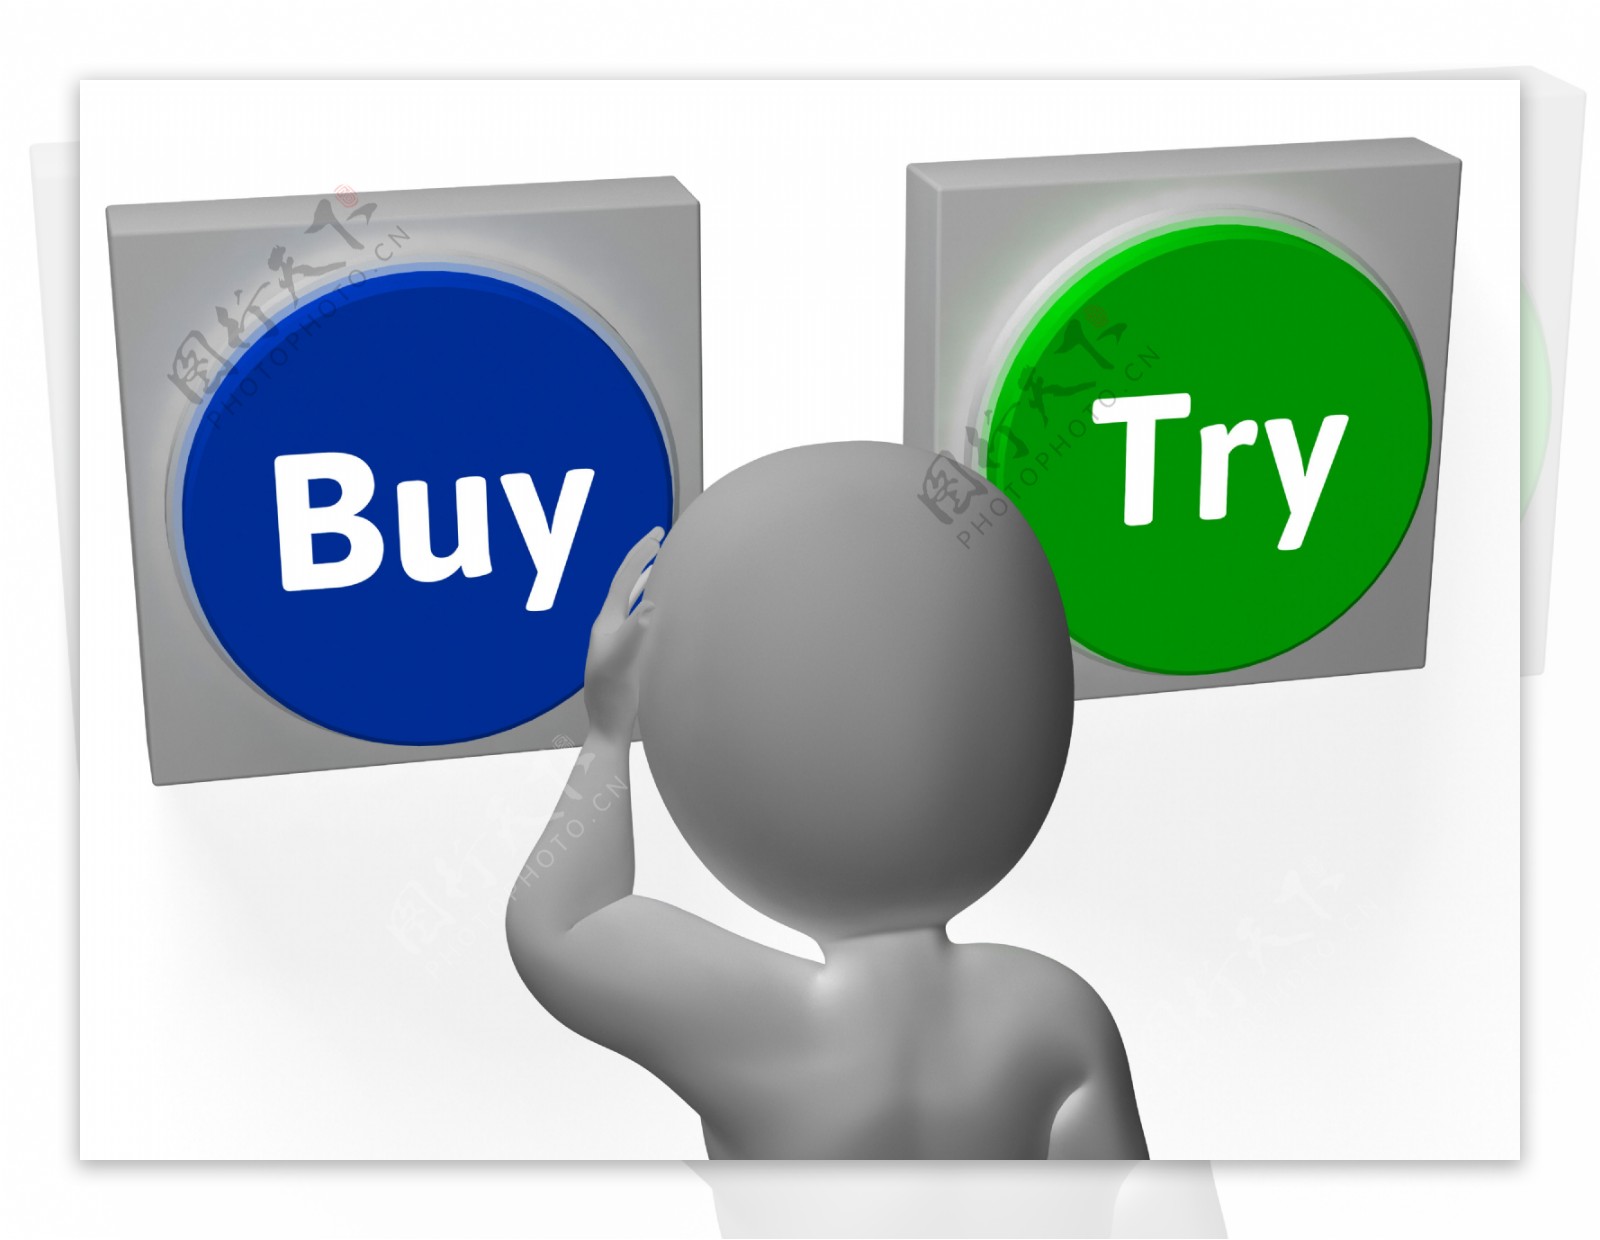 购买按钮显示买方购买决策的尝试